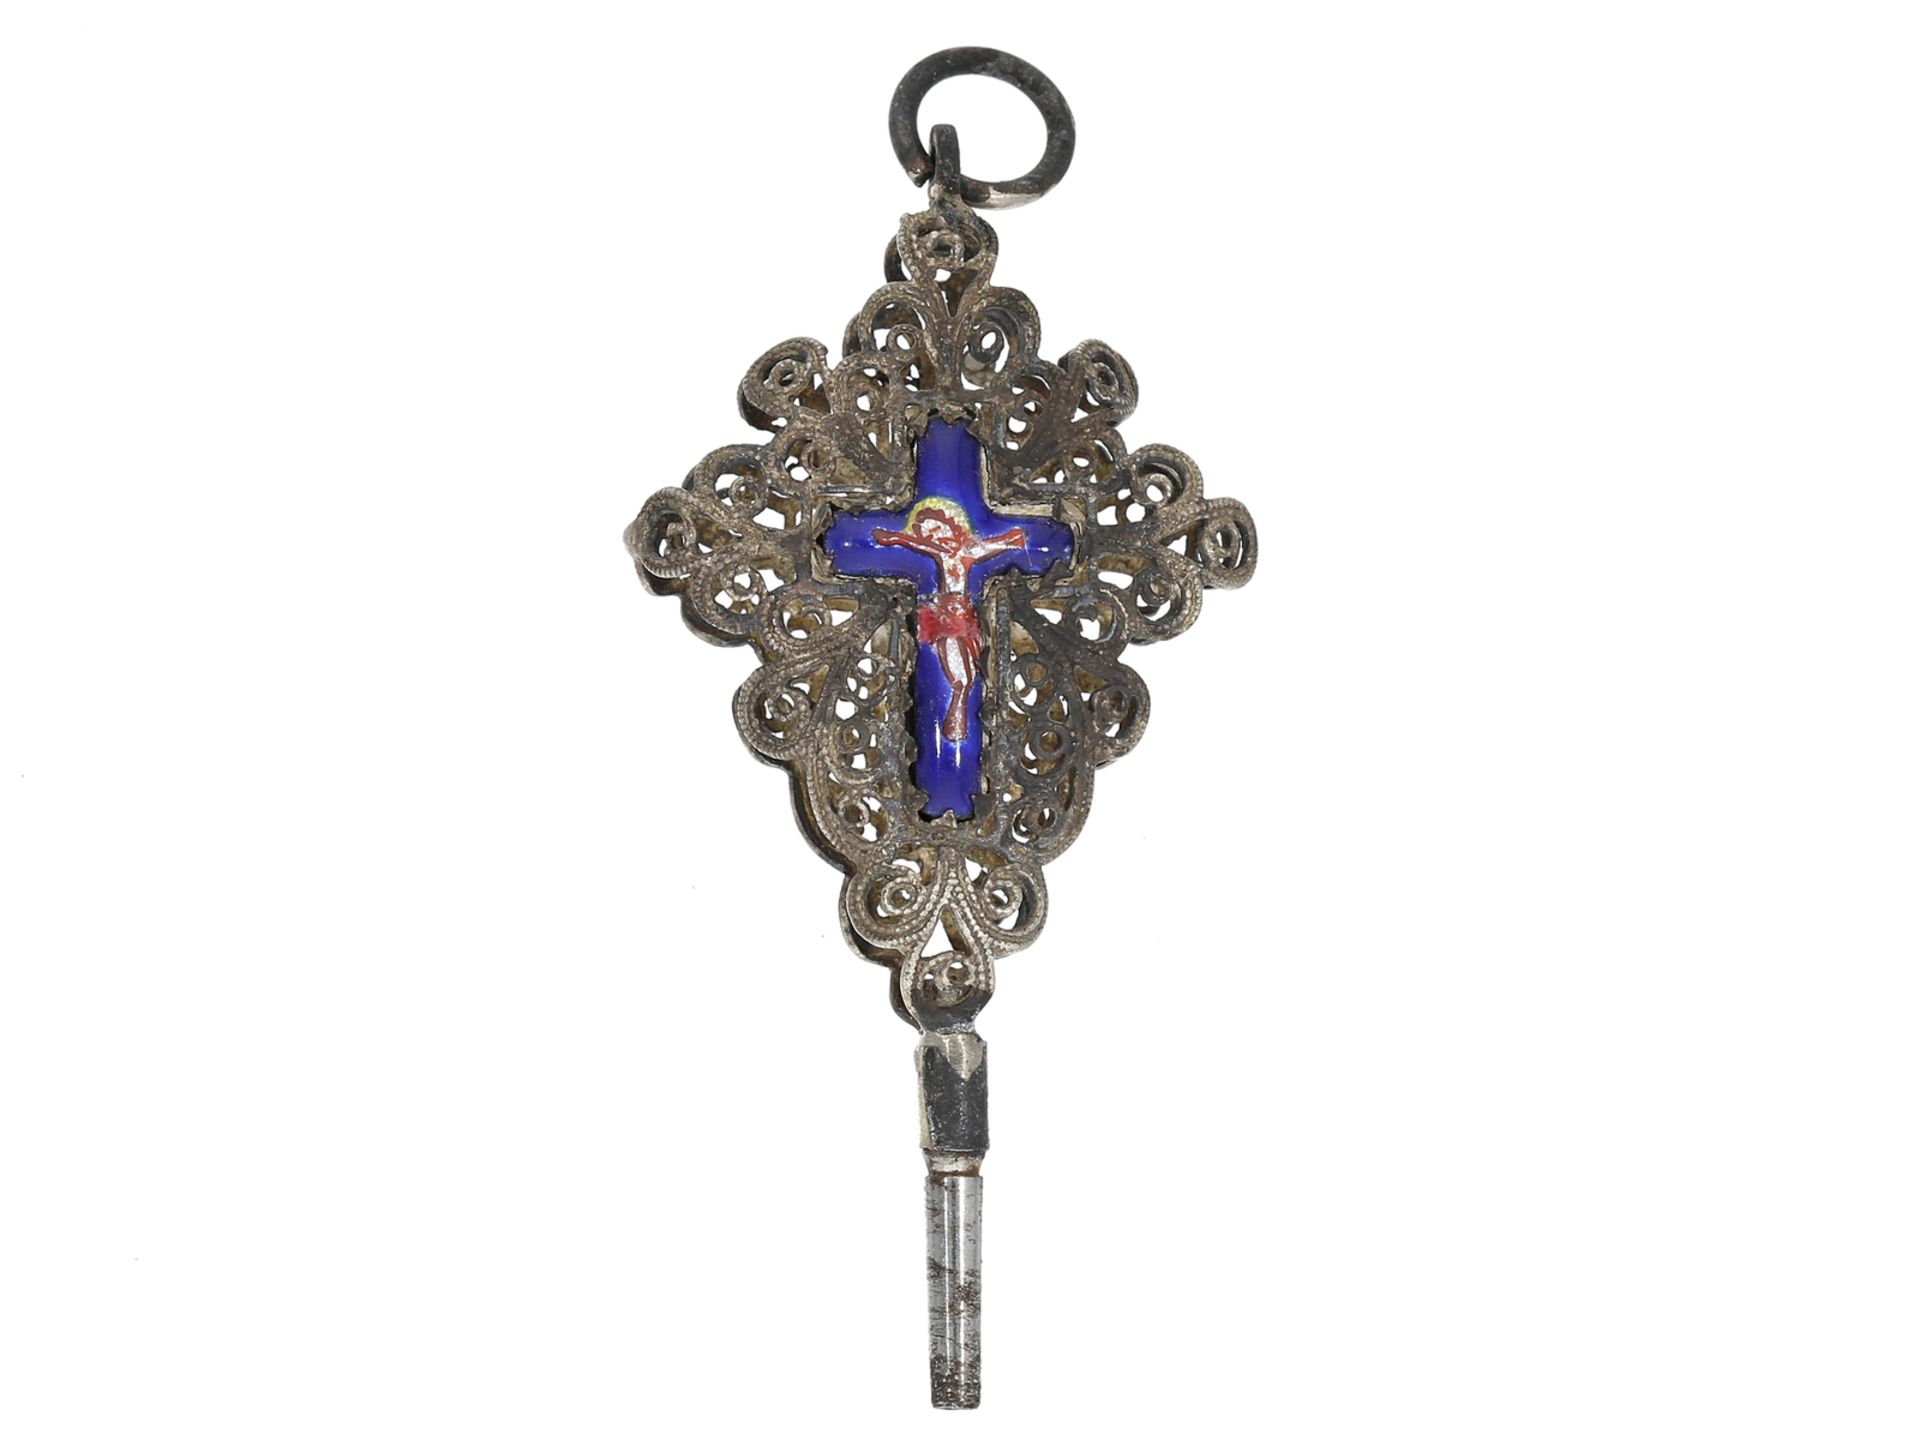 Spindeluhrenschlüssel: sehr seltener emaillierter Uhrenschlüssel mit christlichem Motiv, ca. 1800